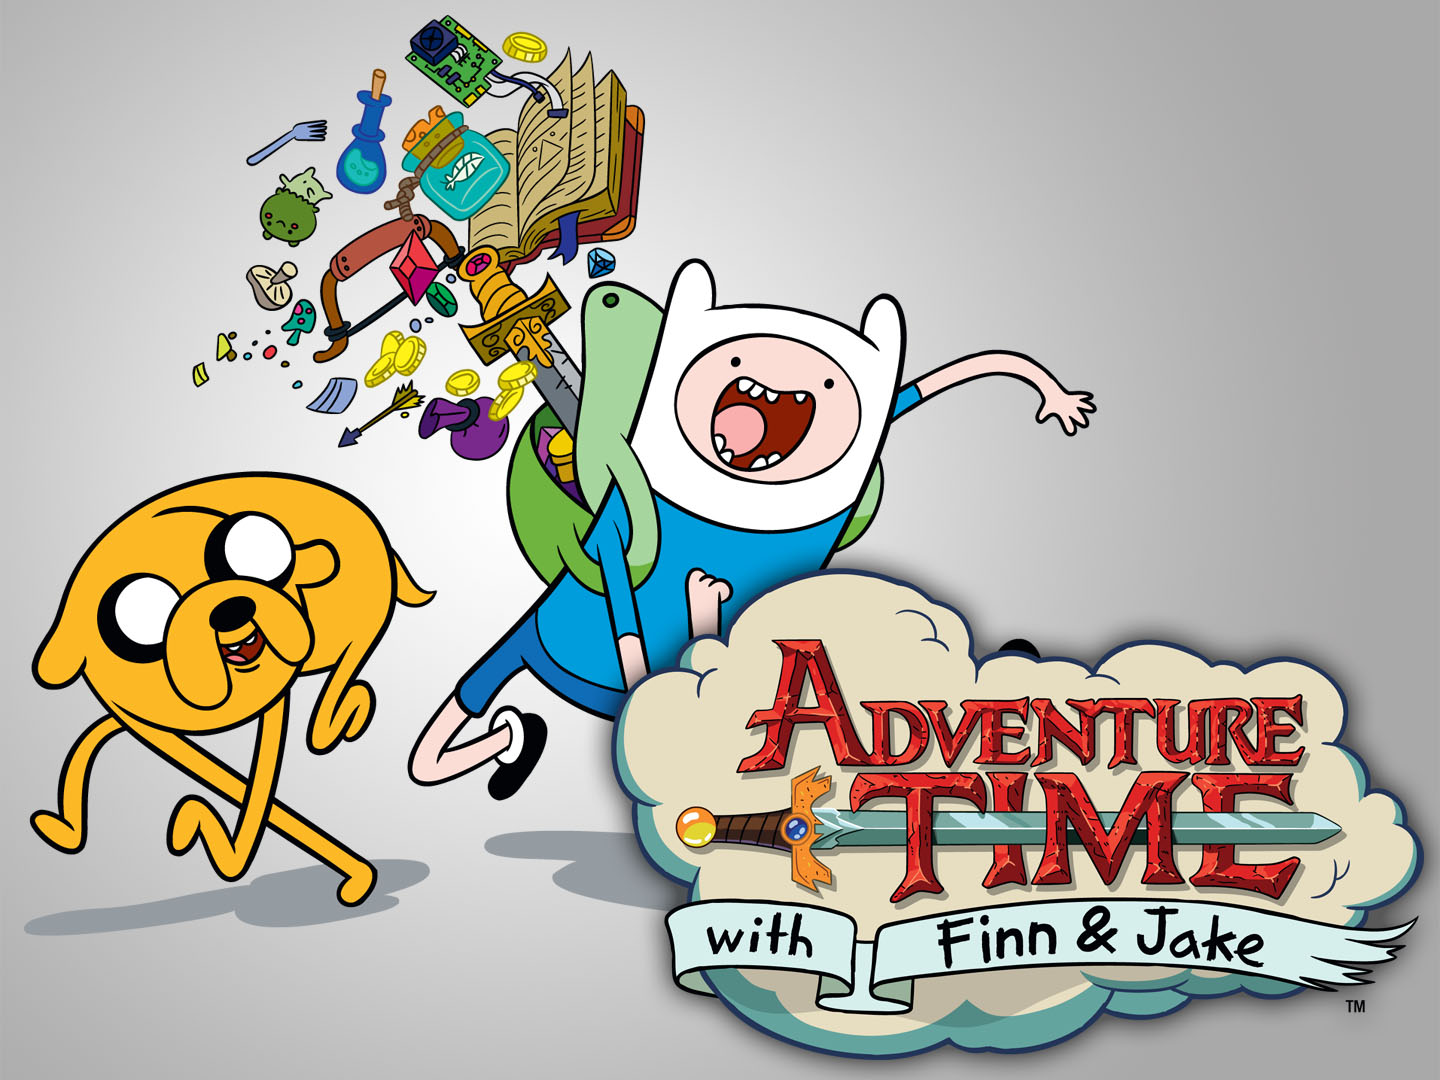 Adventure Time hd wallpapers ImageBankbiz